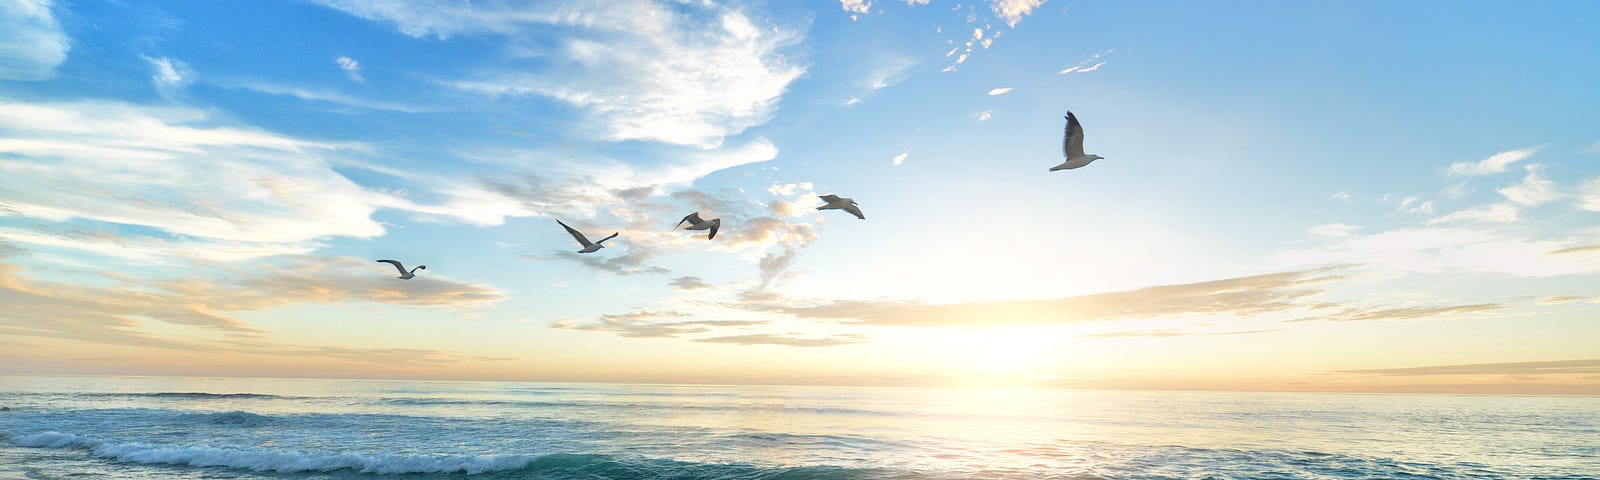 Sunrise on a beach with birds flying overhead